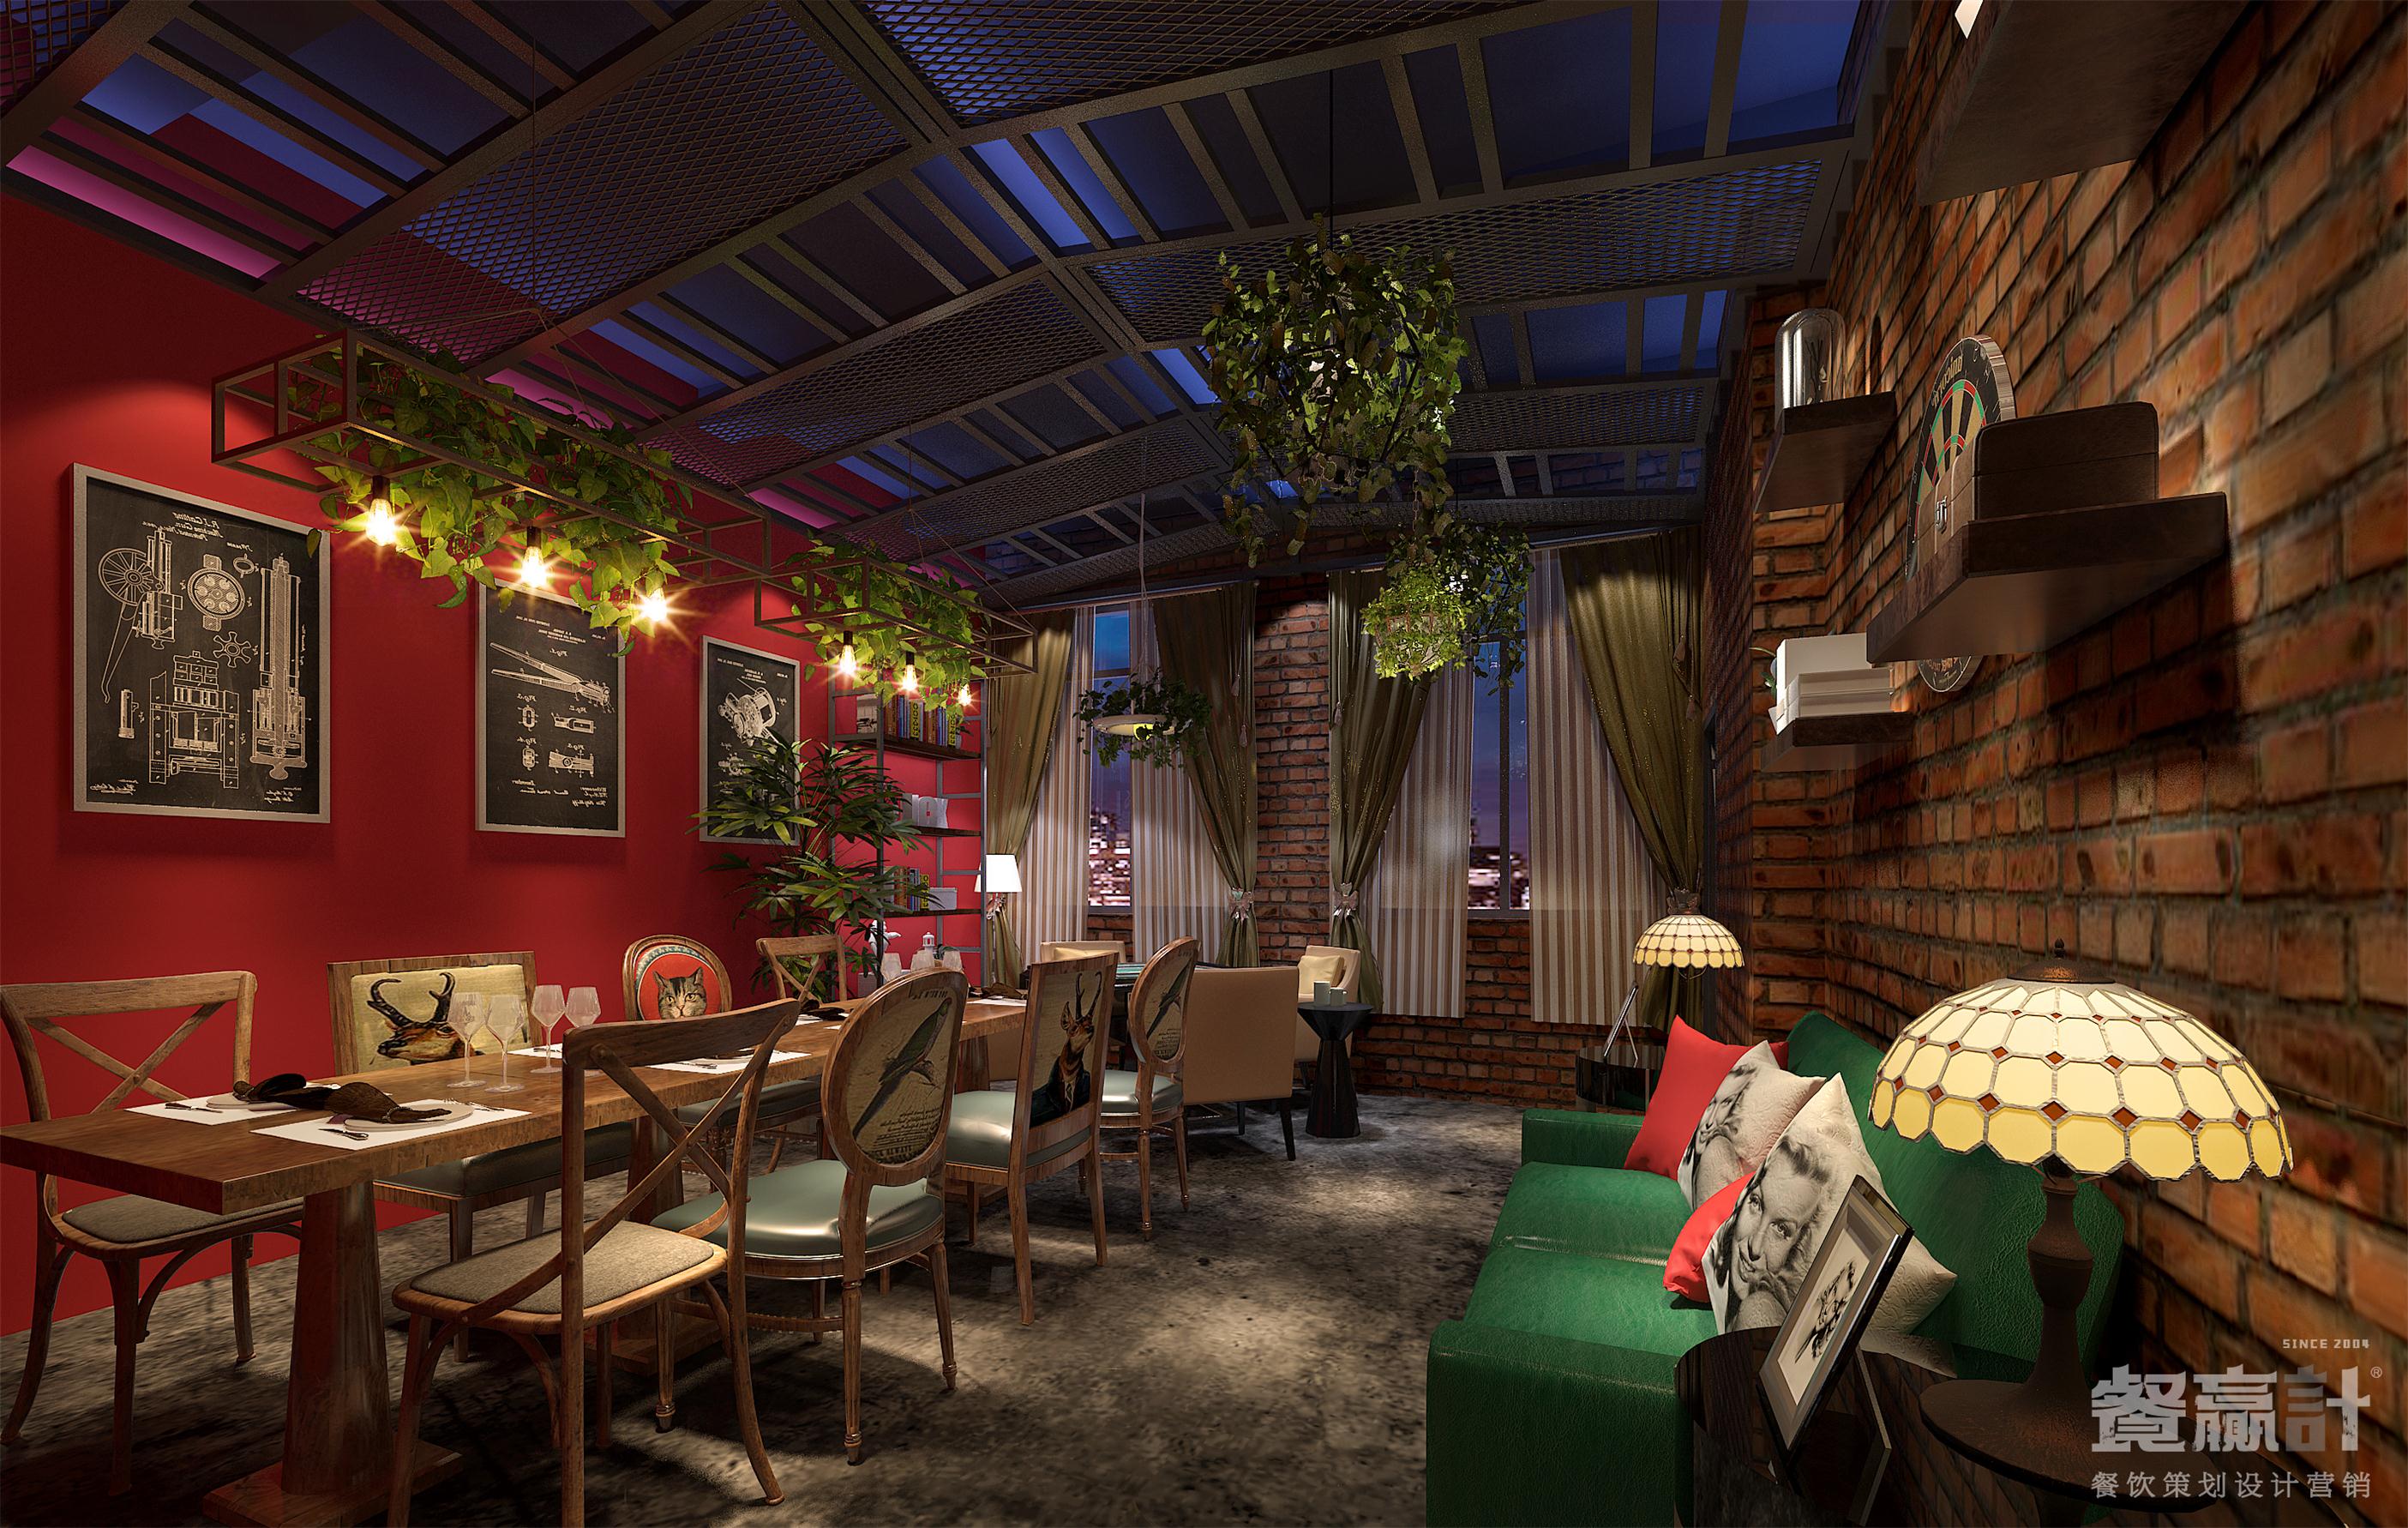 酒吧品牌老牌深圳餐饮设计公司浅谈深圳餐饮空间设计的十大要素